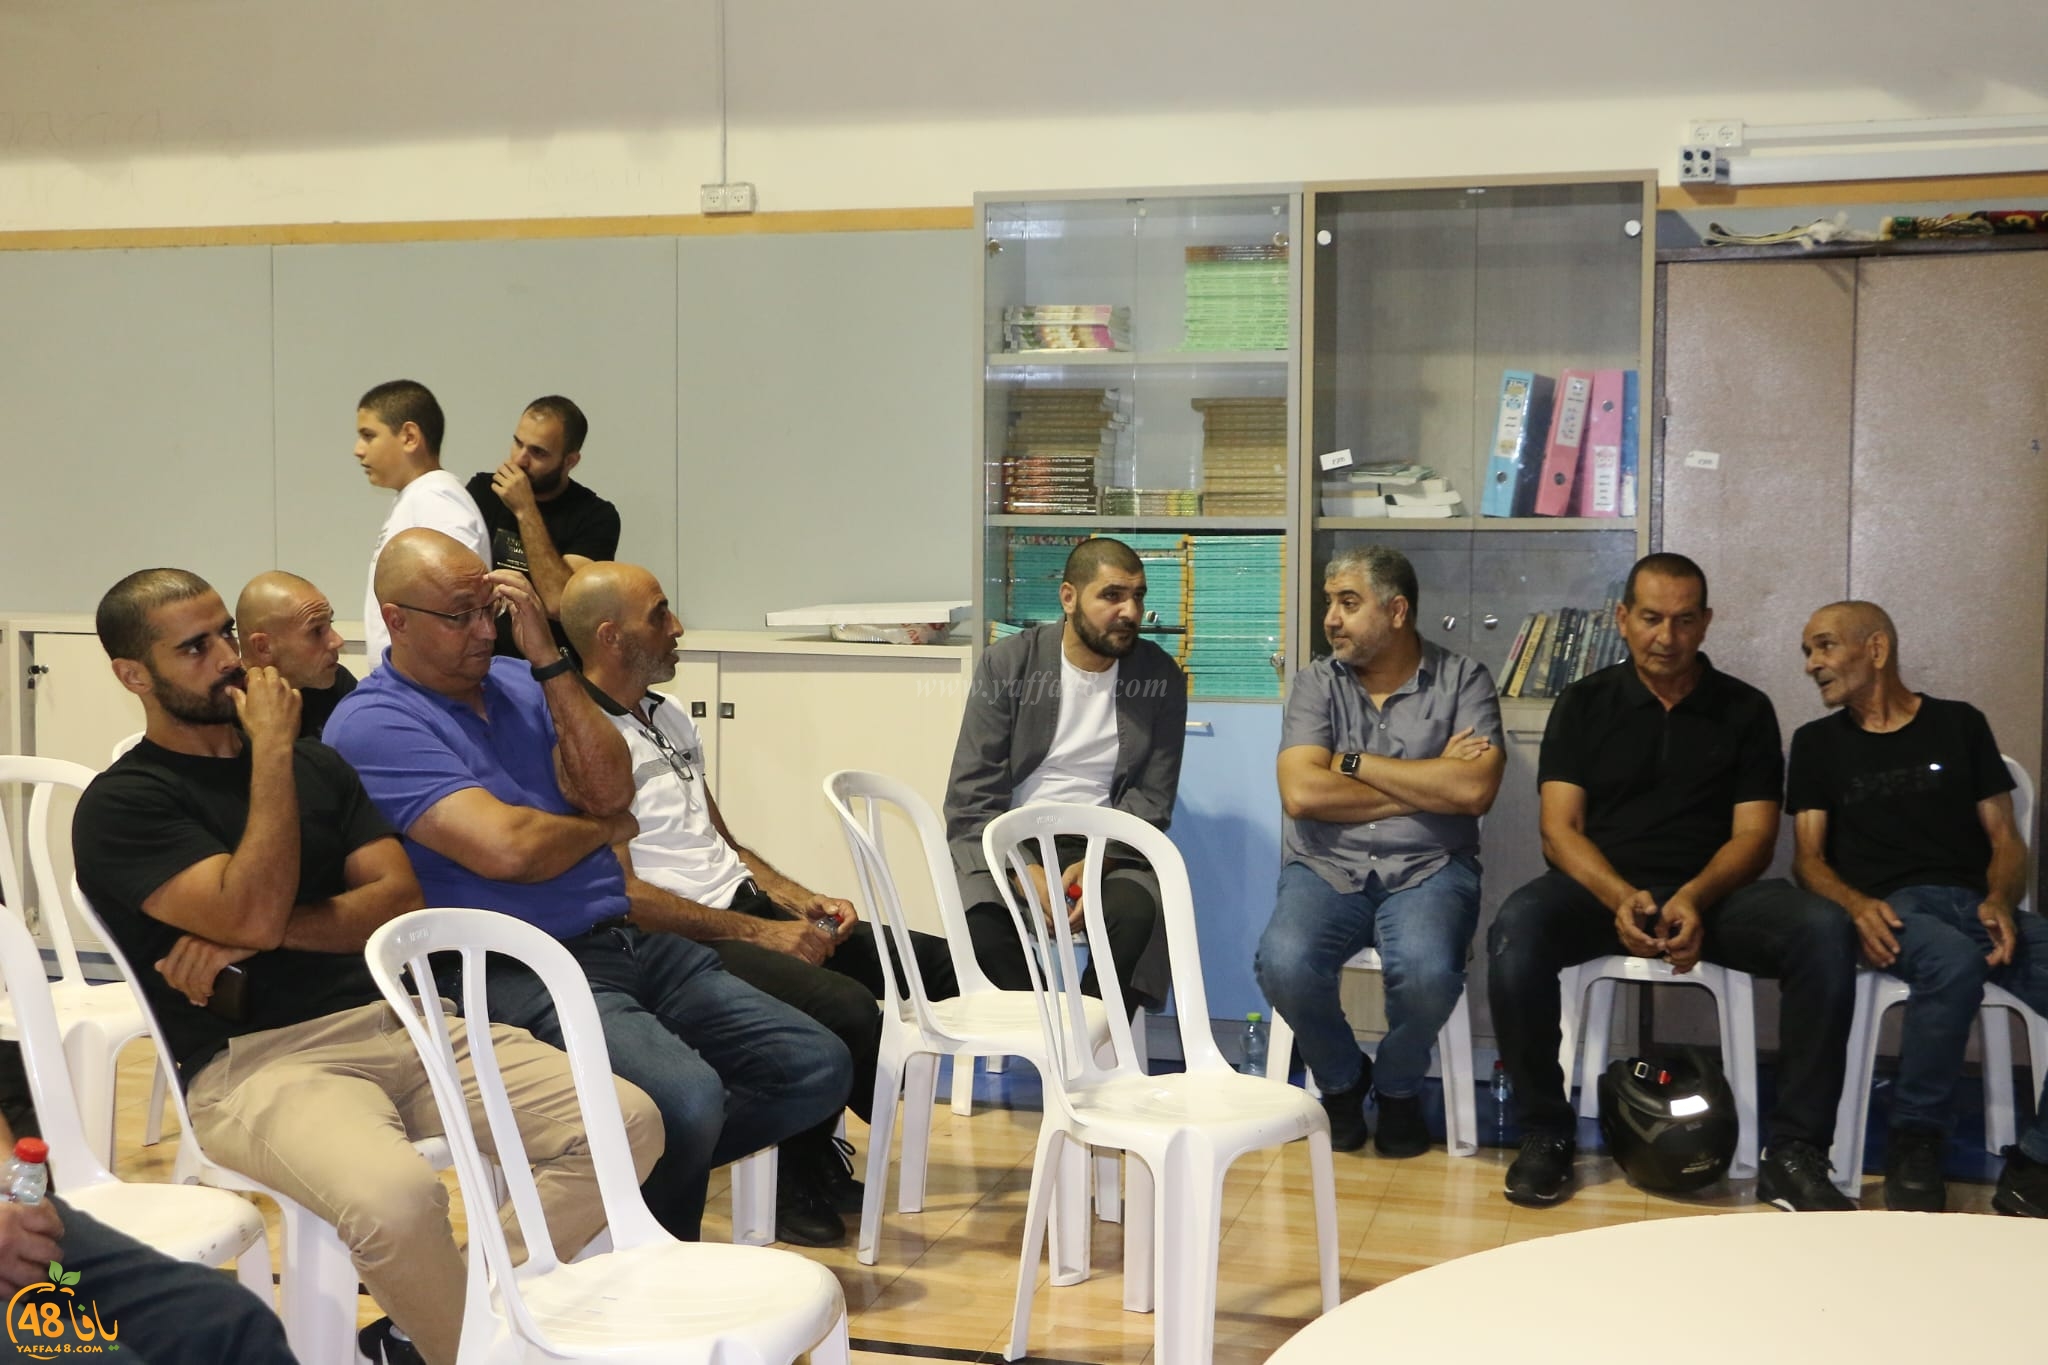  لجنة أولياء الأمور في مدرسة يافا الشاملة تعقد اجتماعاً بحضور الأهالي